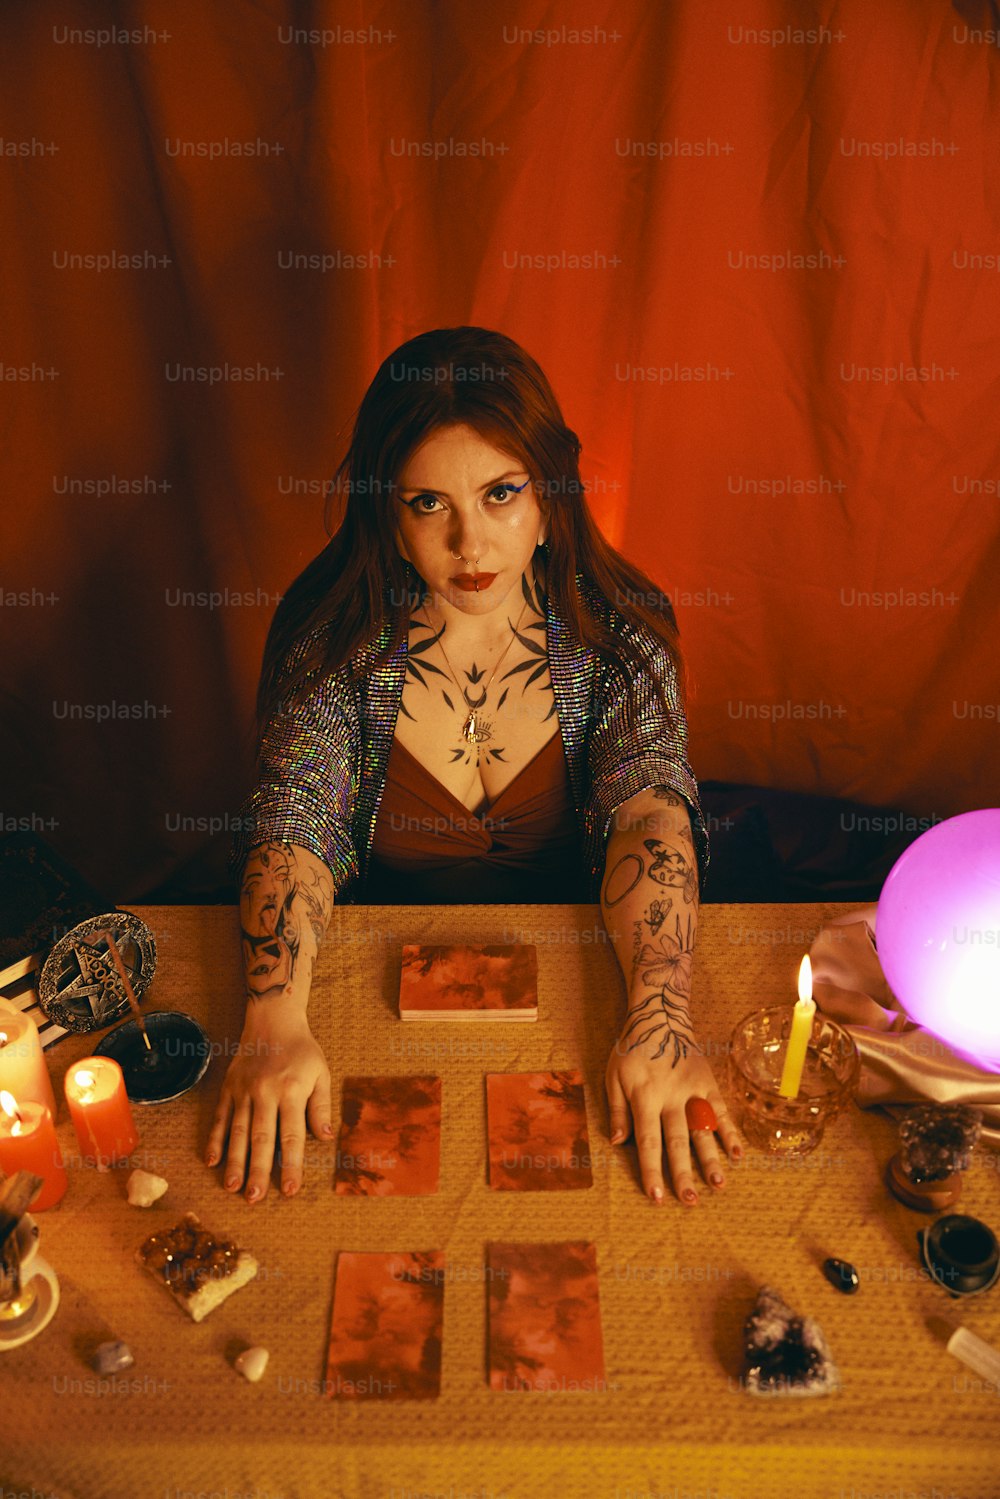 Une femme assise à une table avec des cartes et des bougies